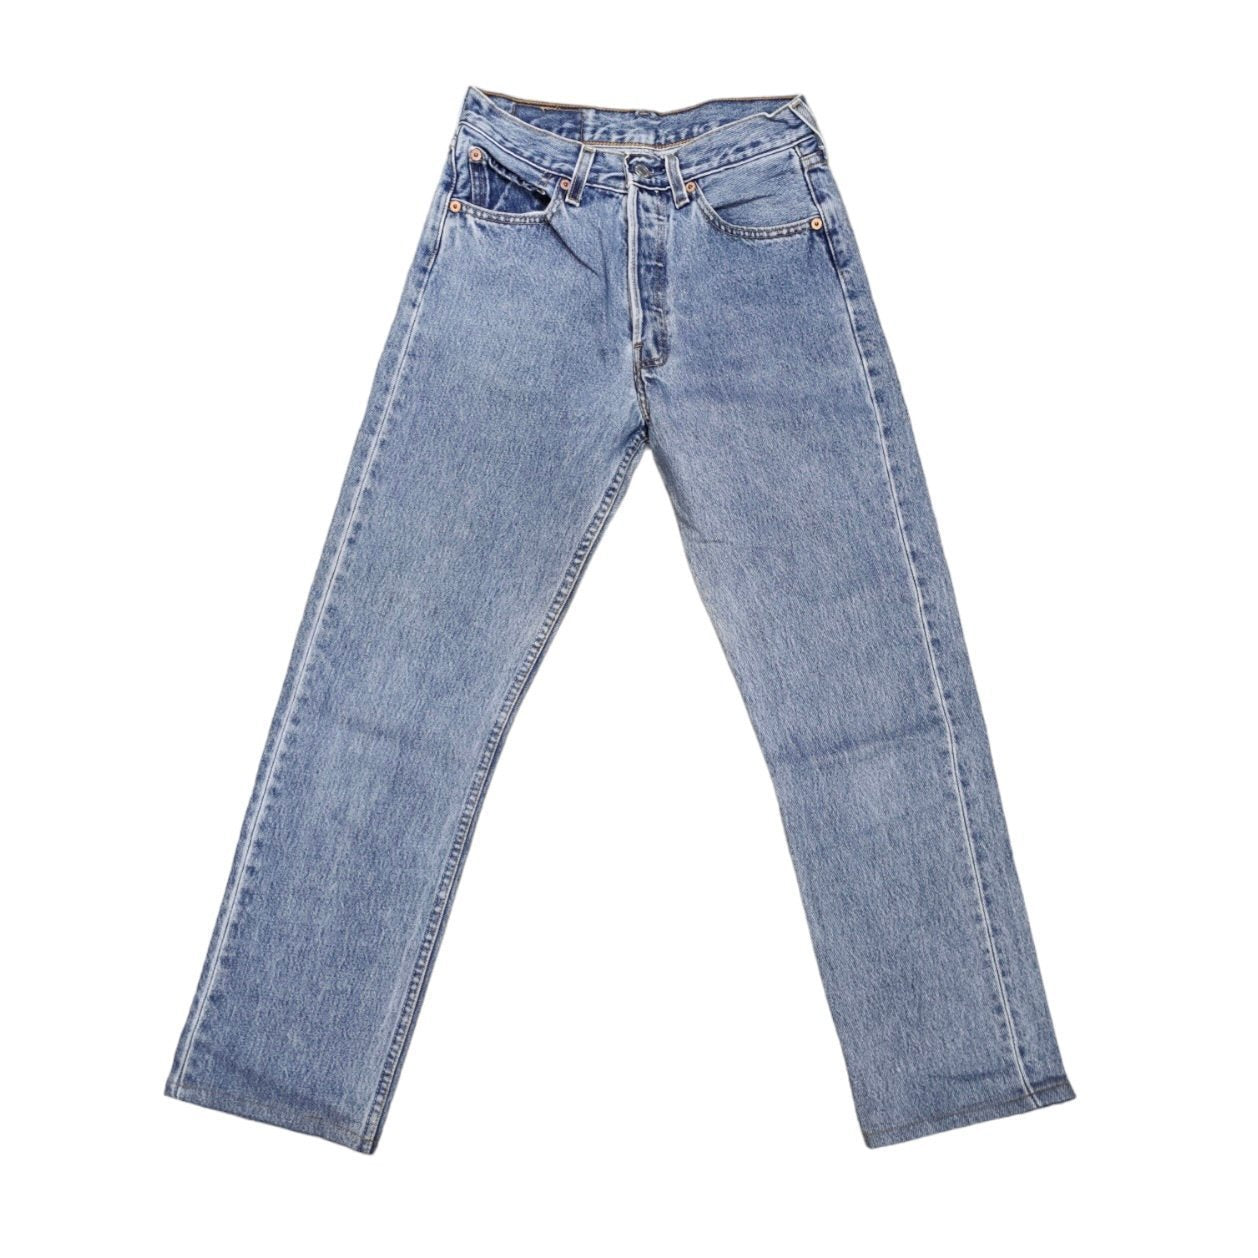 Vintage Levis Blue Jeans (W27)